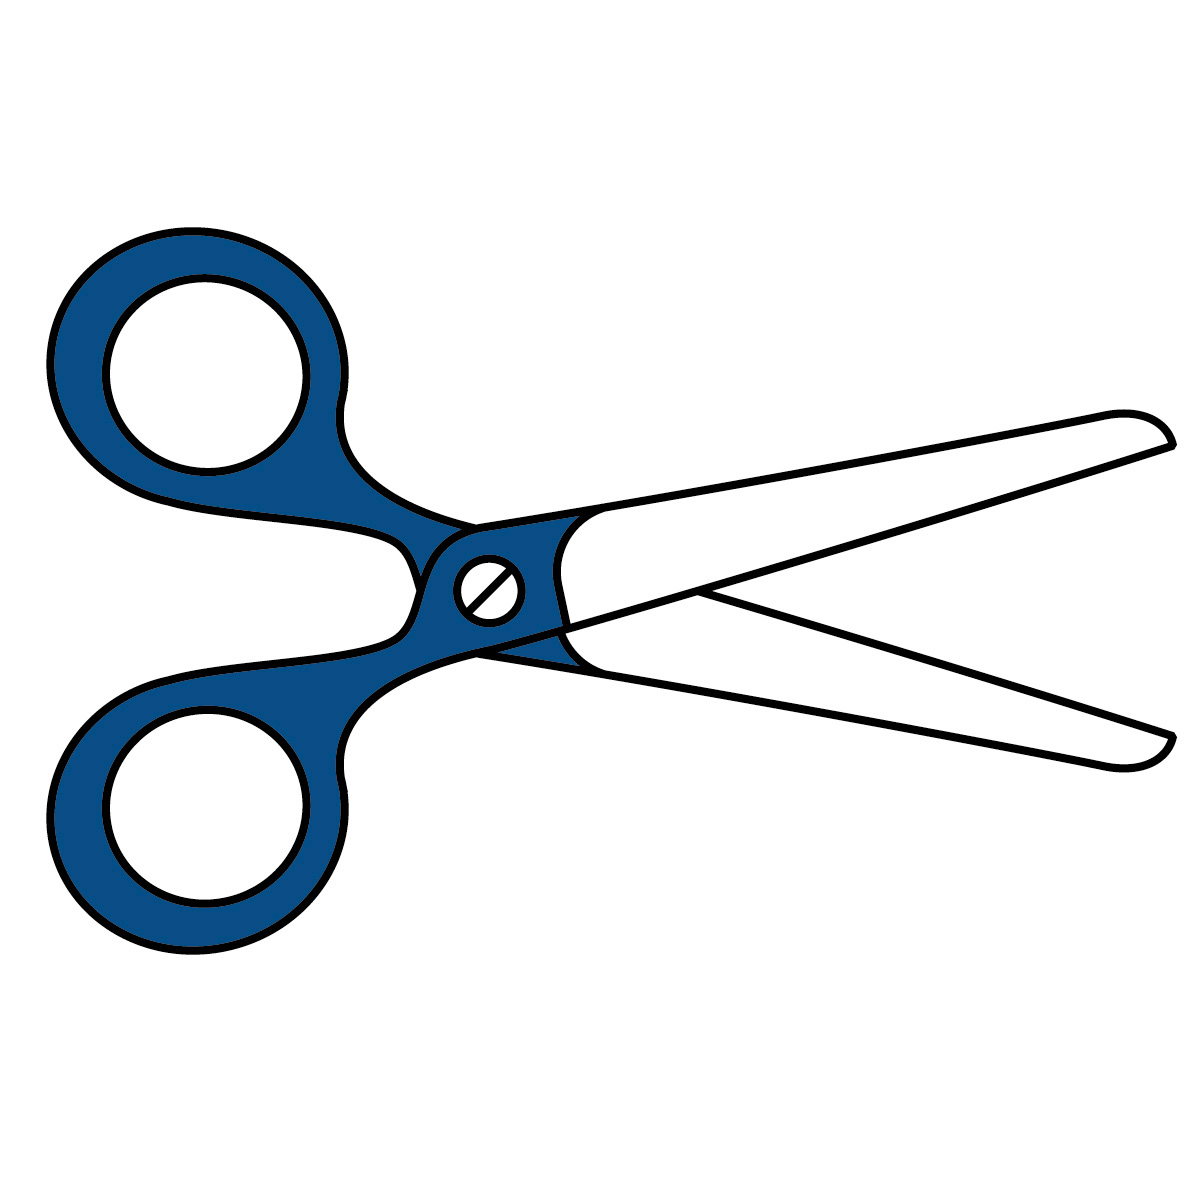 Scissors Clip Art - Scissors Clip Art Free